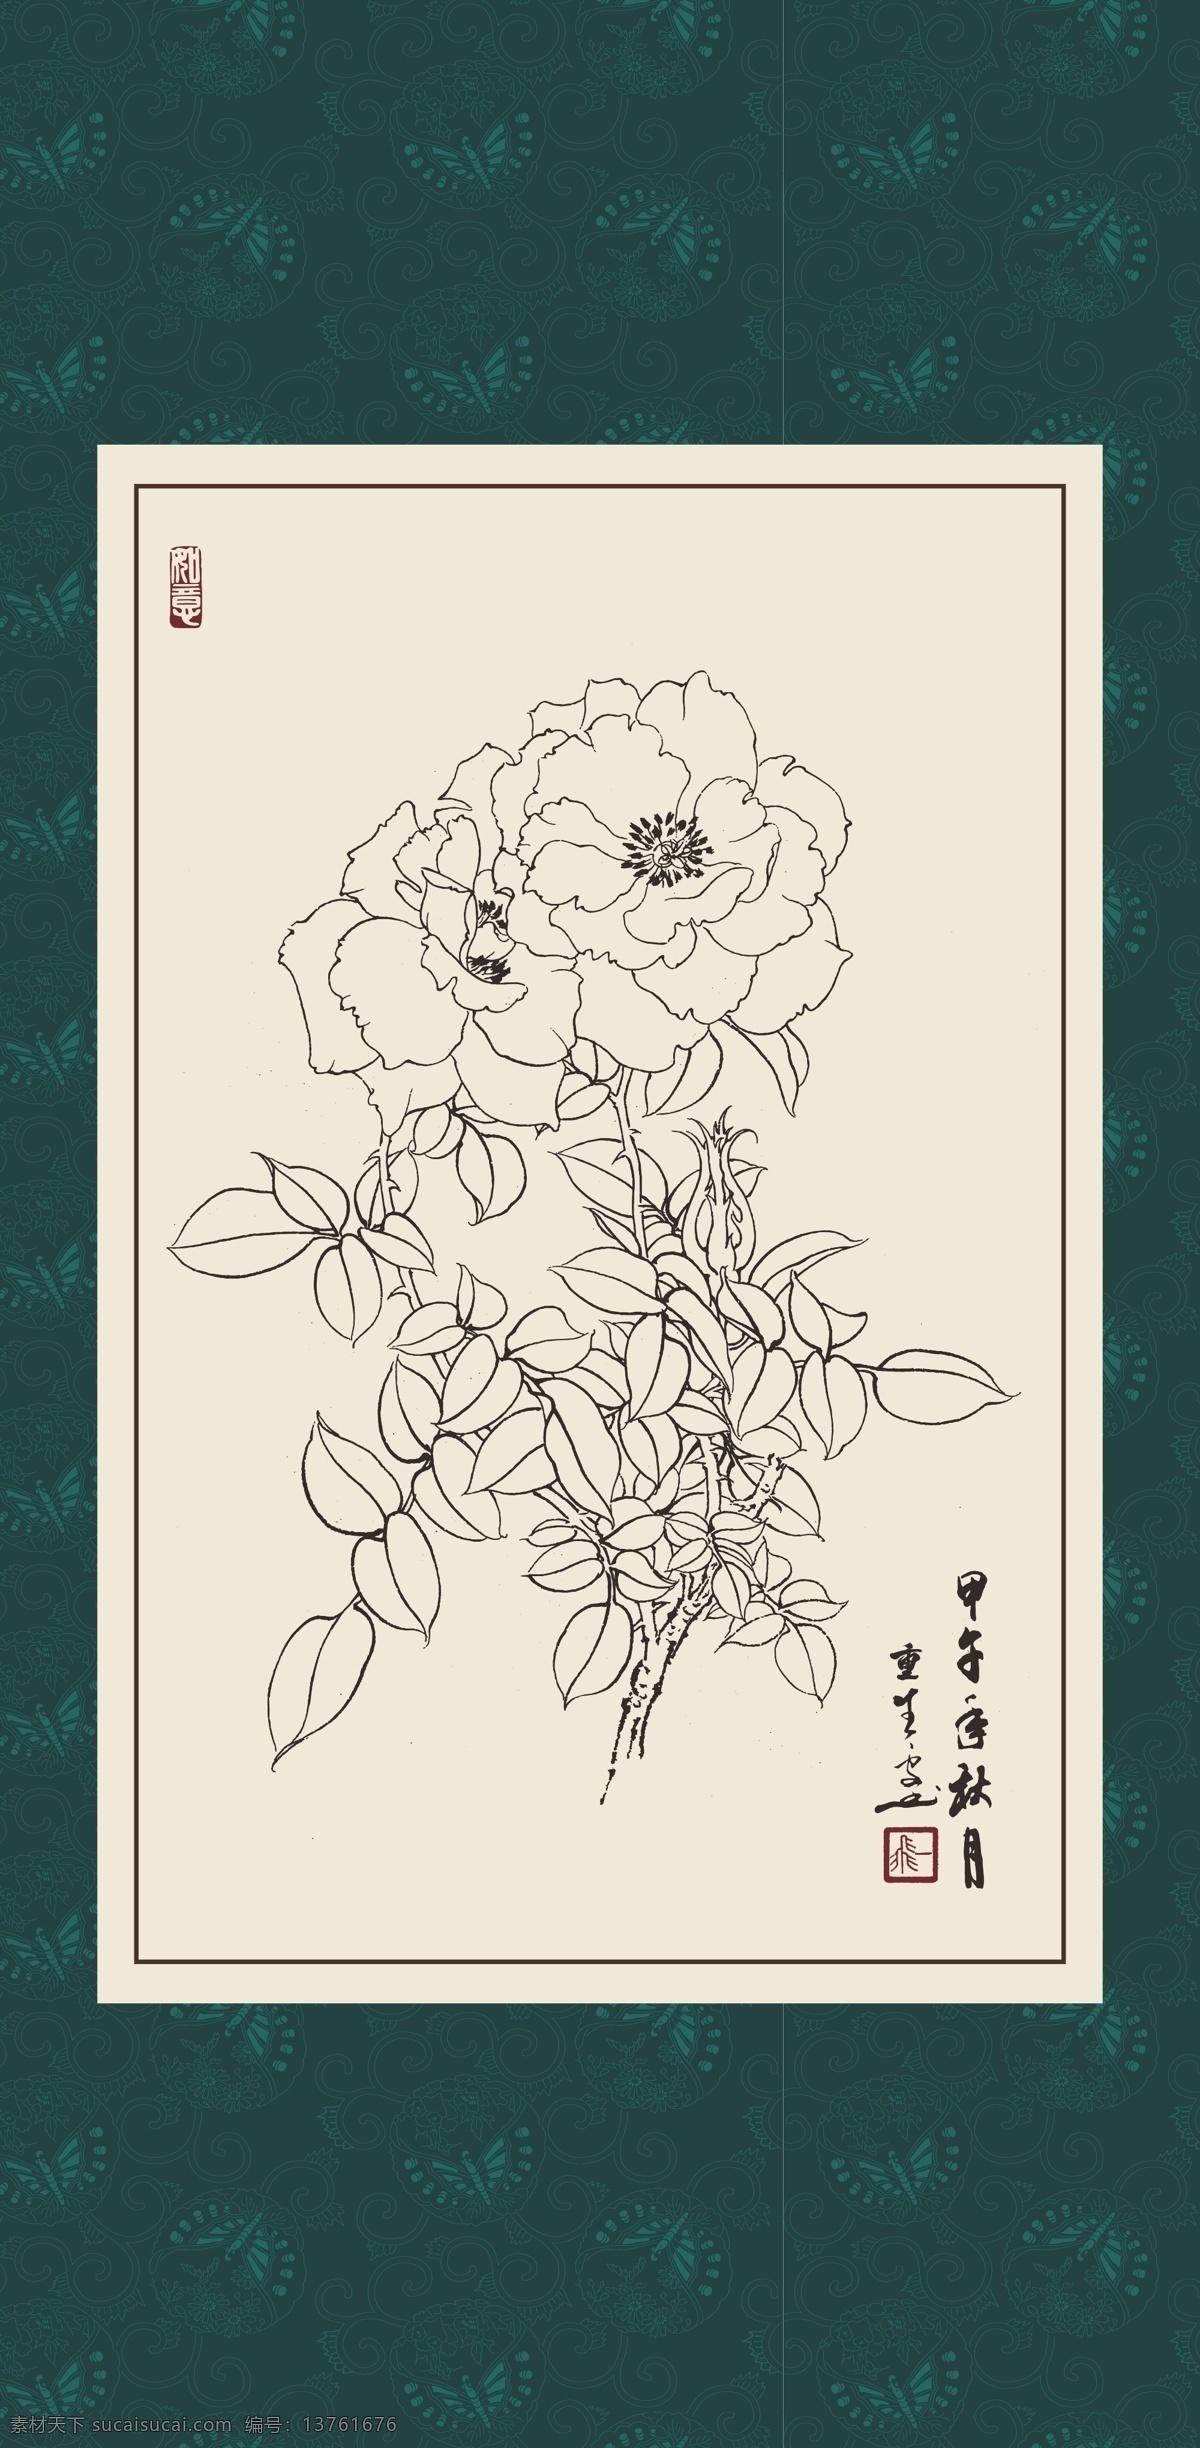 白描 线描 绘画 手绘 国画 印章 植物 花卉 工笔 gx150100 白描月季 玫瑰 文化艺术 绘画书法